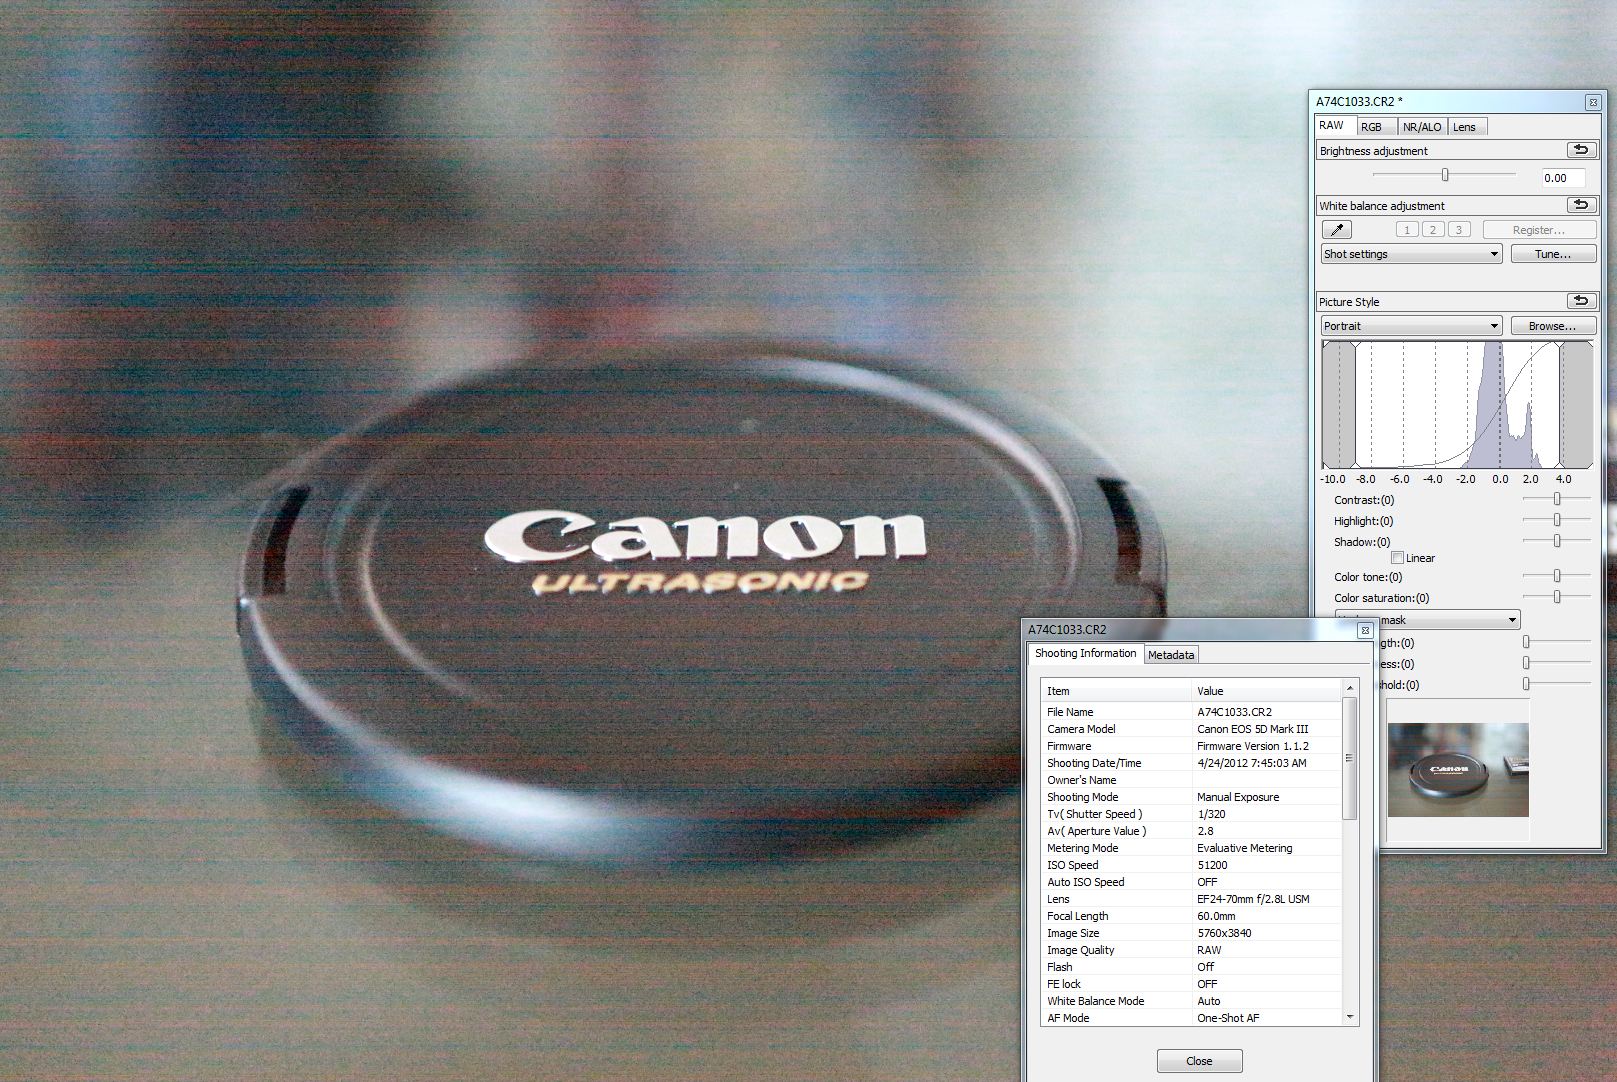  Canon EOS 5D Mark III- IŞIK SIZINTISI SORUNU